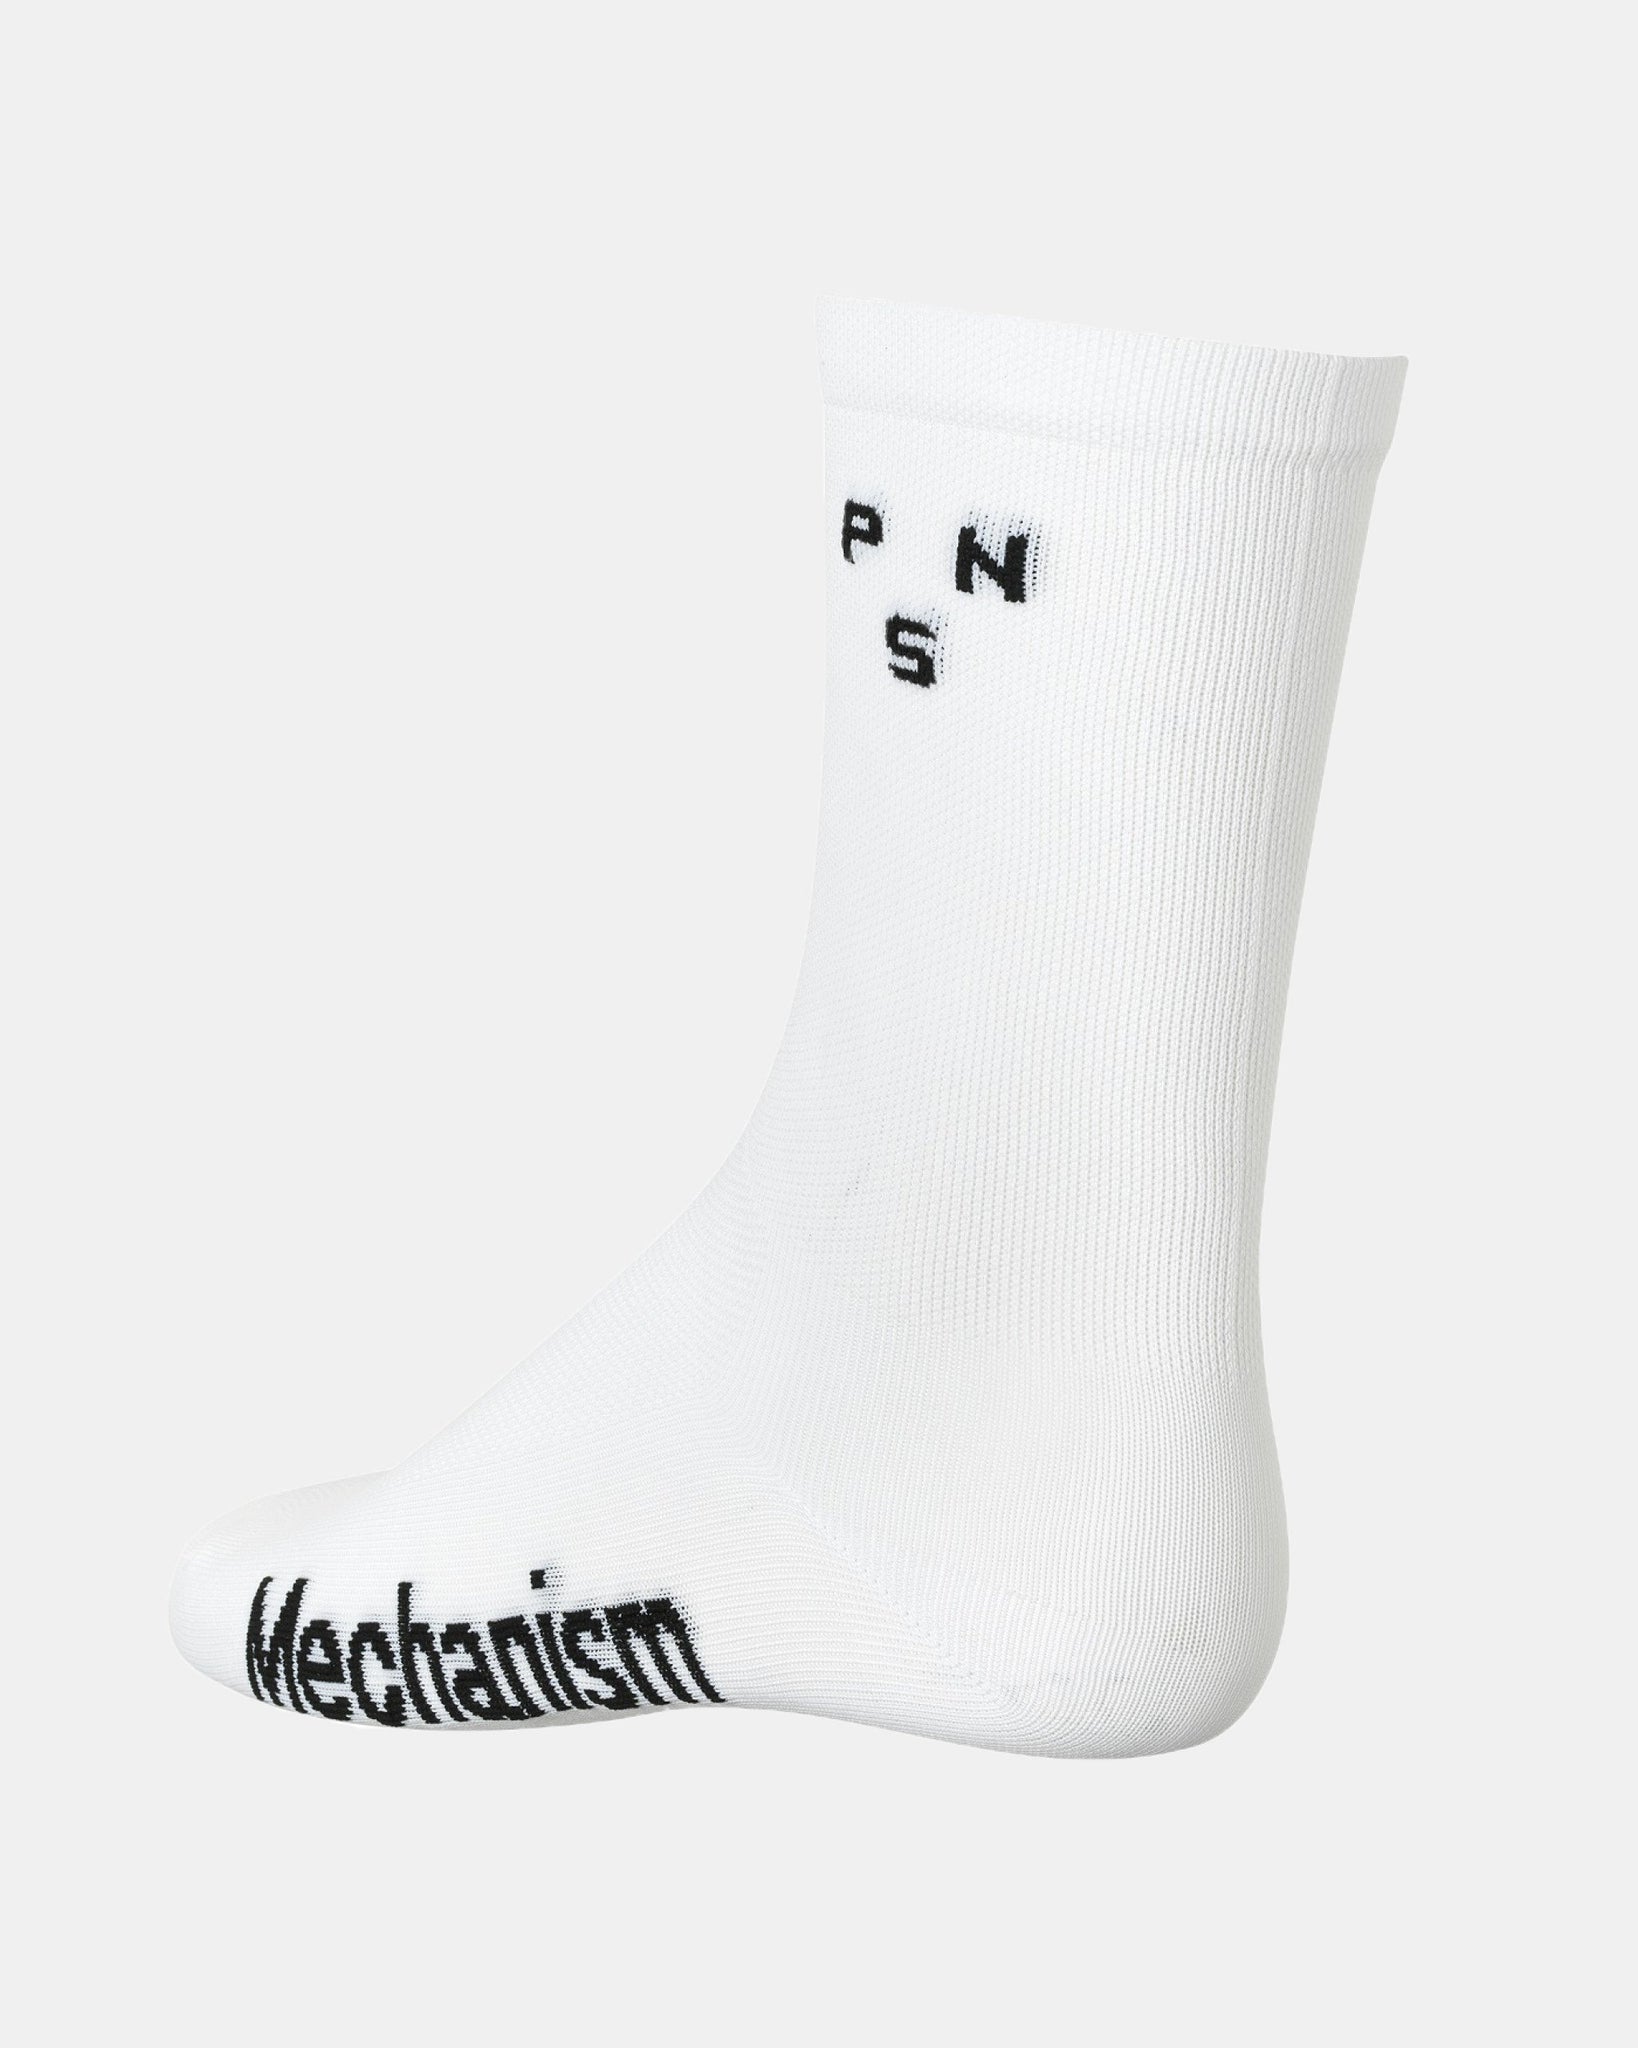 Mechanism Socks - White